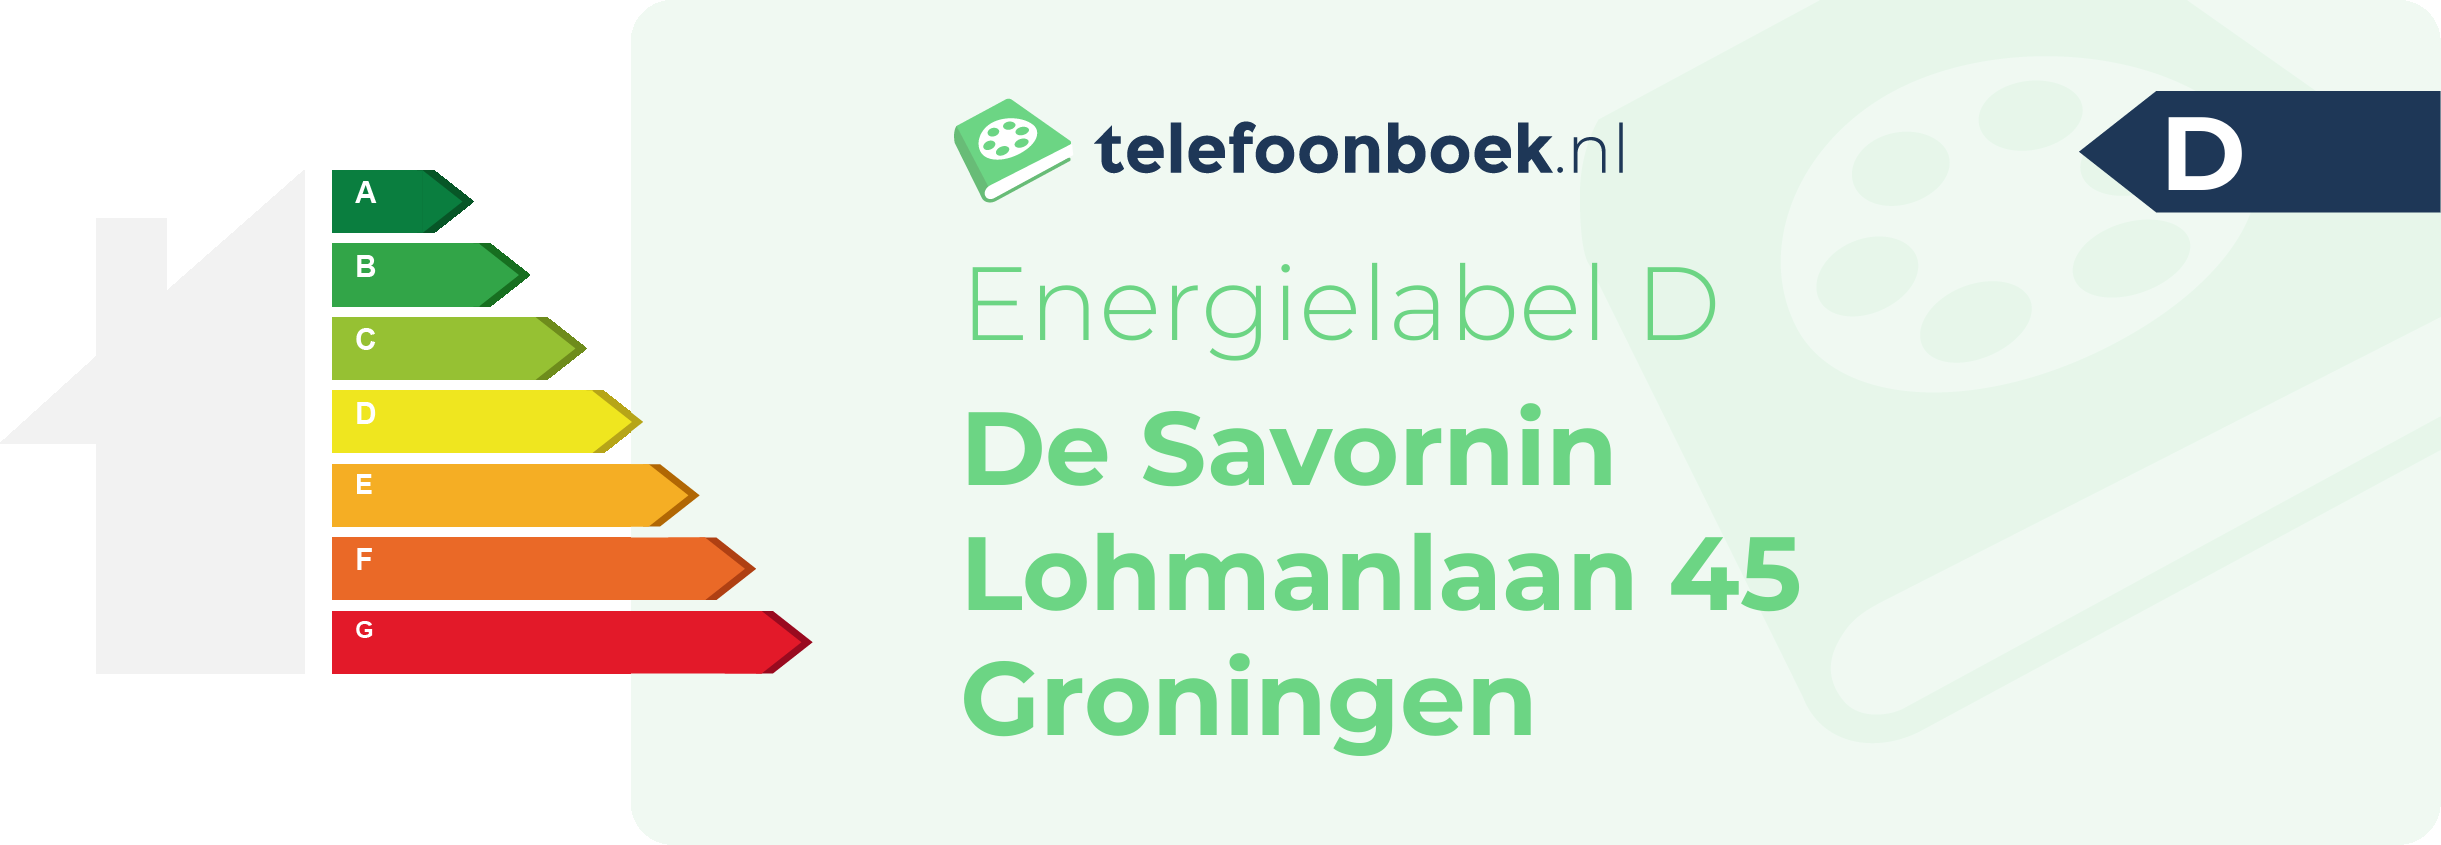 Energielabel De Savornin Lohmanlaan 45 Groningen